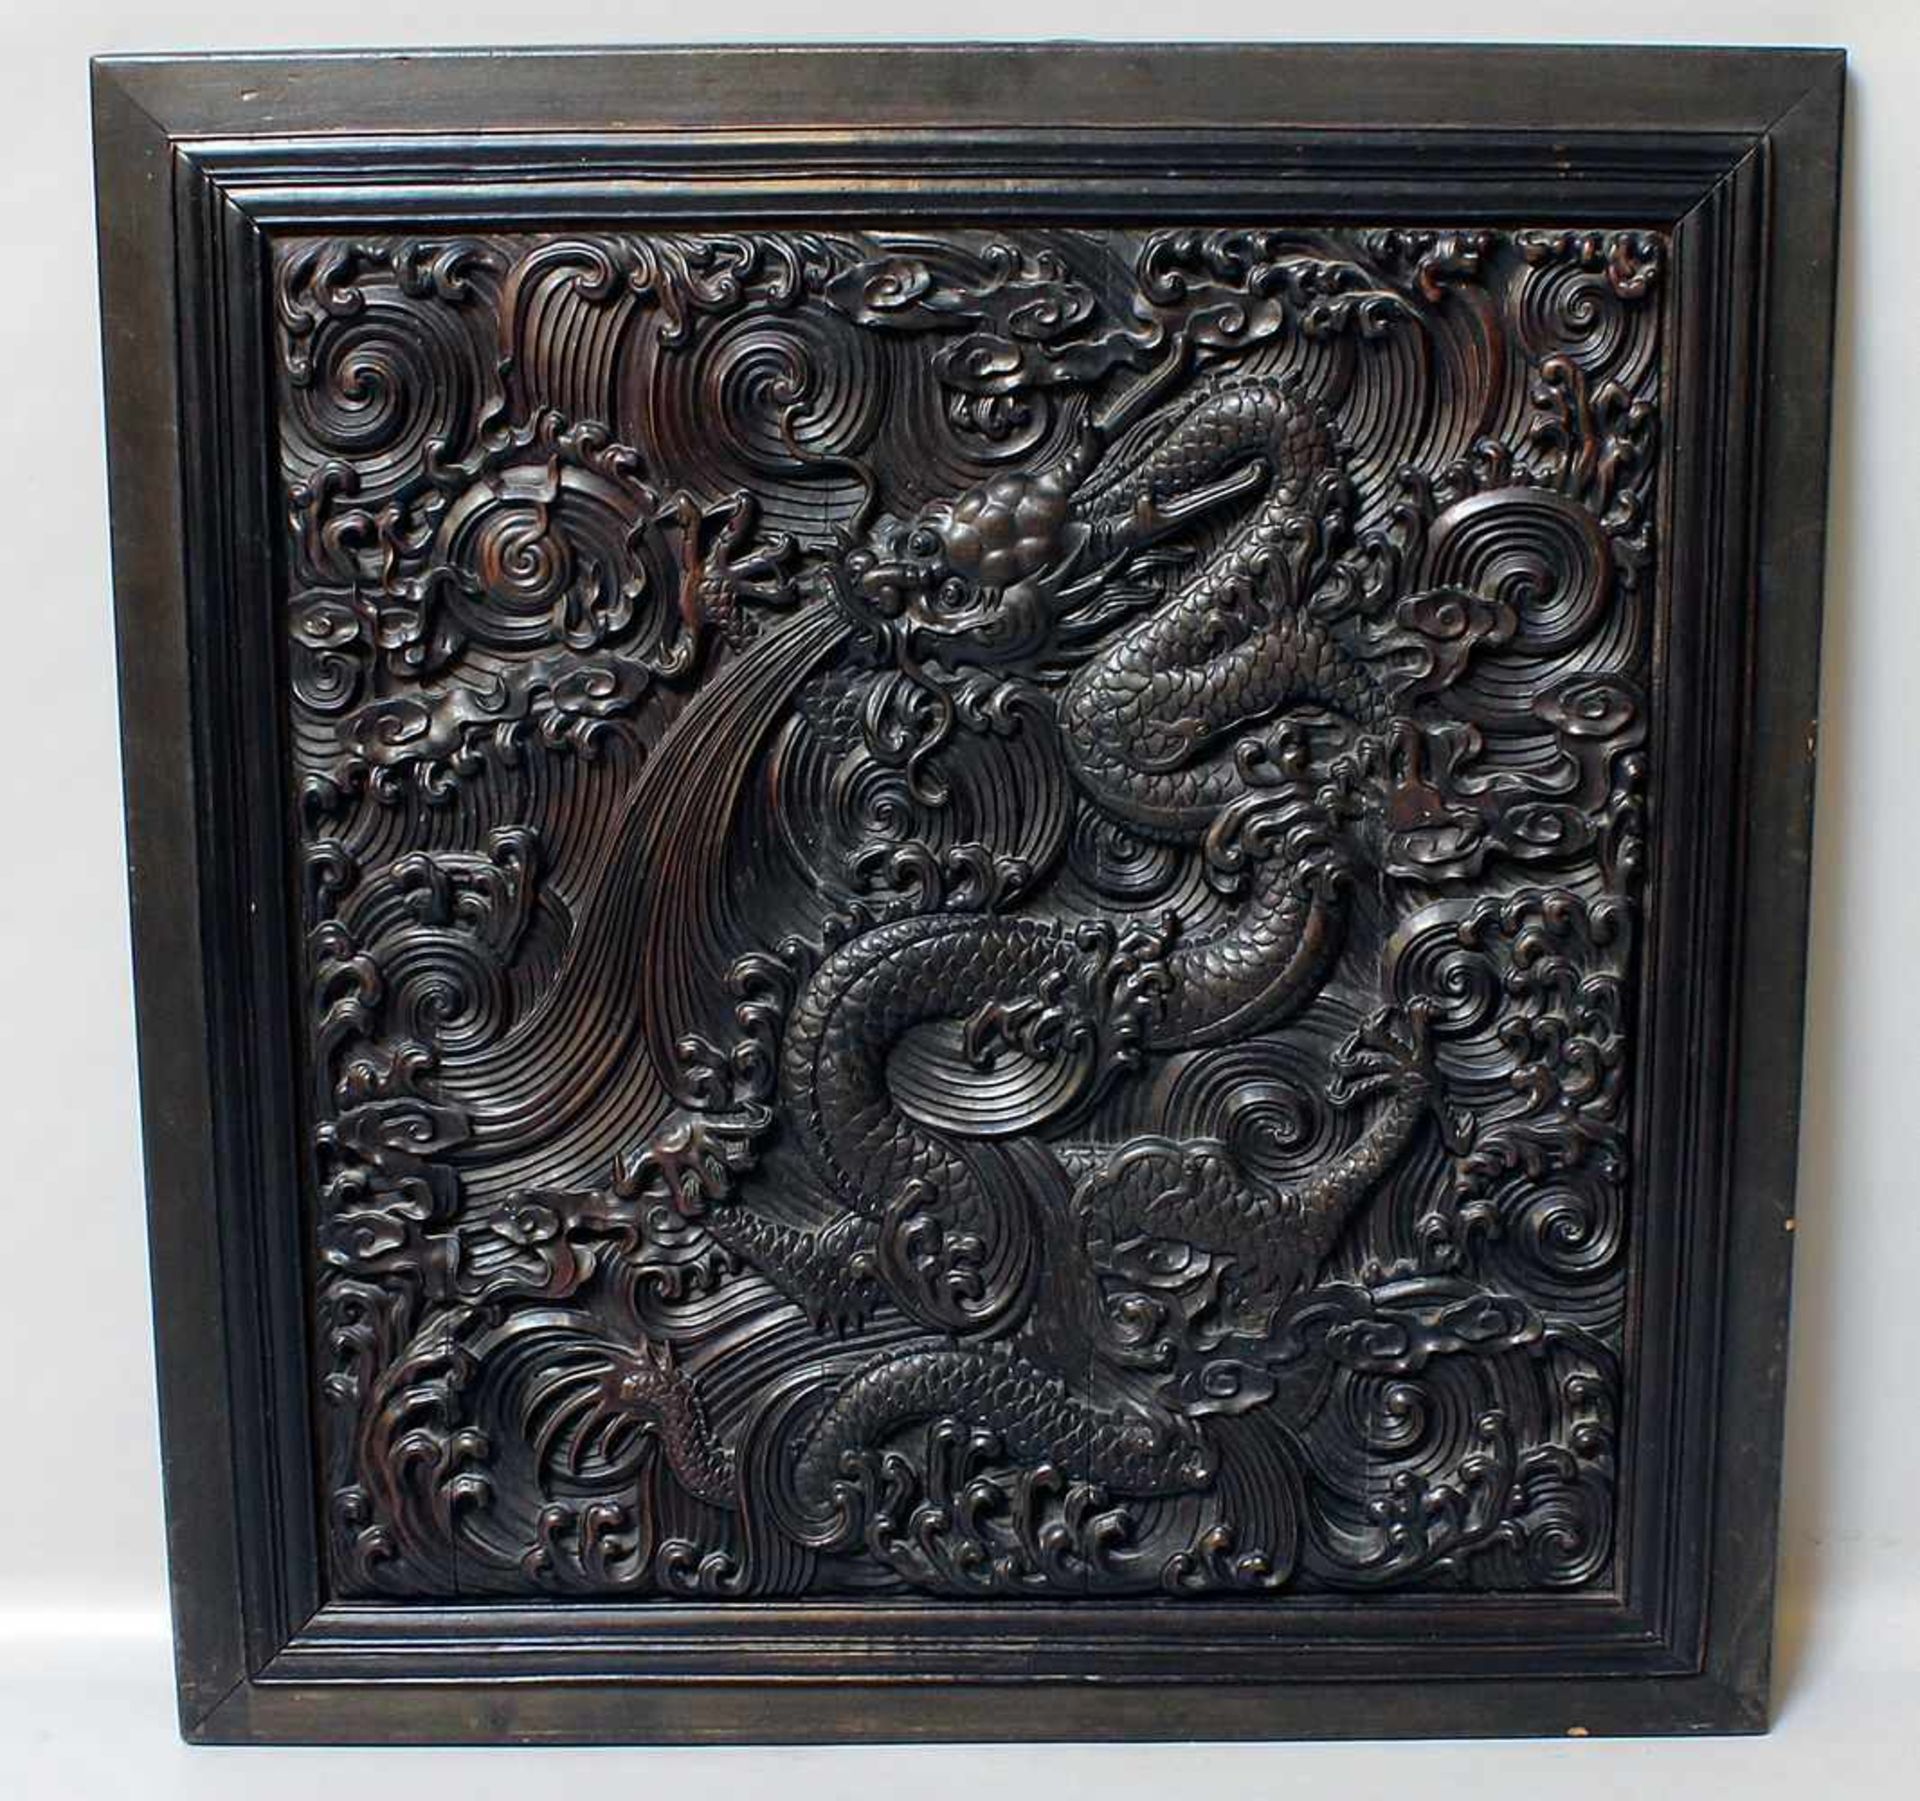 Chinesische Reliefschnitzerei.Dunkles Hartholz. Darstellung eines speienden Drachen mit 5-Klauen